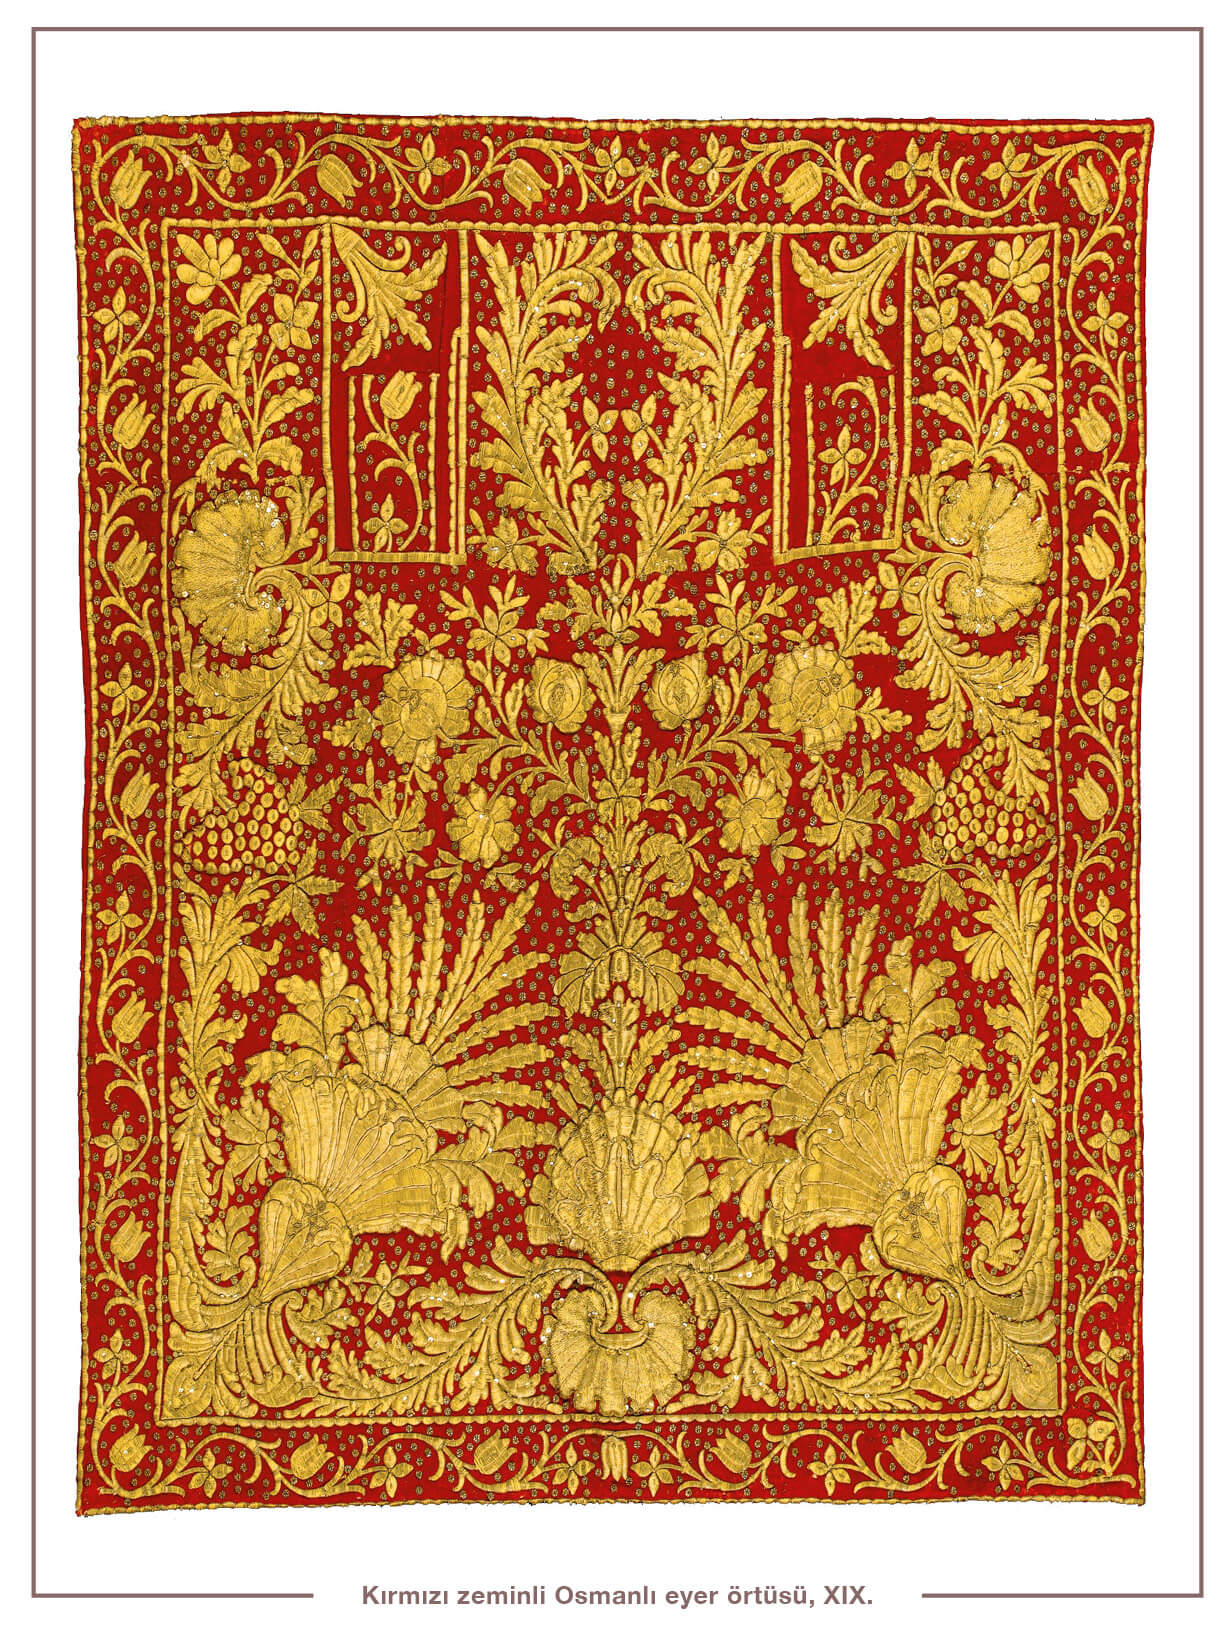 Kırmızı zeminli Osmanlı eyer örtüsü, XIX. yüzyıl.